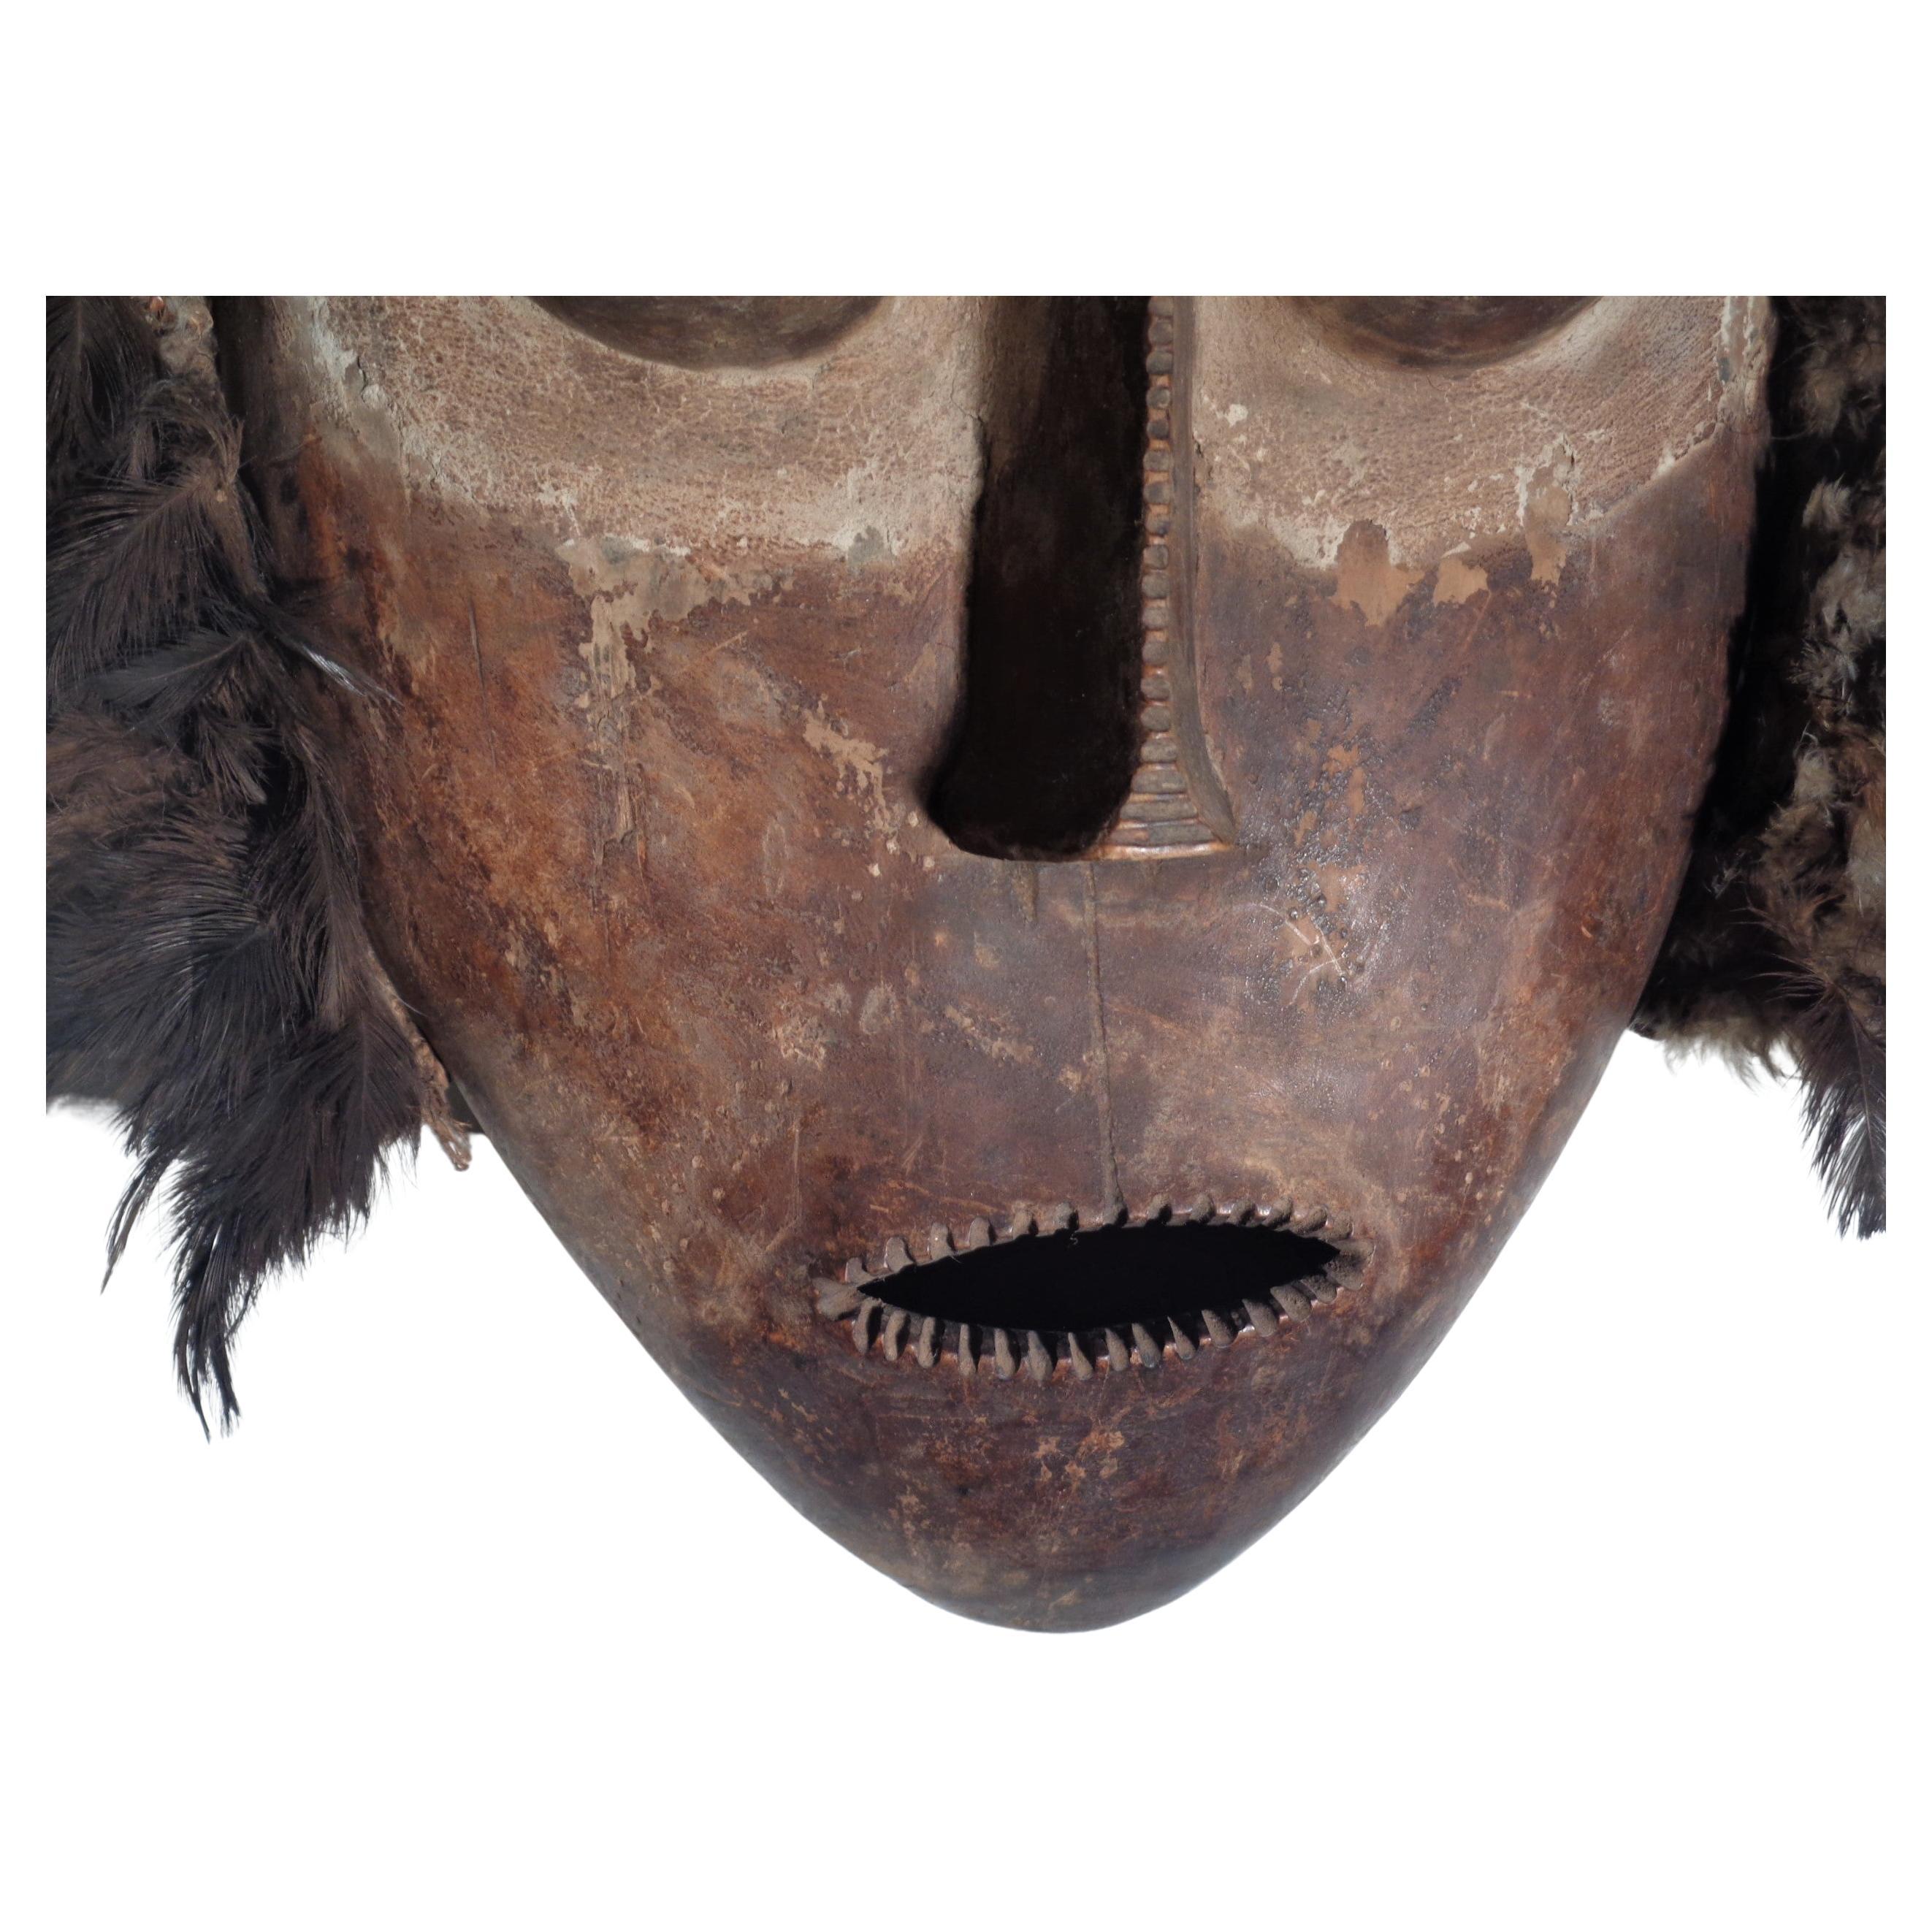 Masque africain Bembe avec plumes de la région du Congo en couleur originale vieillie et pigmentée au bois. Provenant d'une collection privée d'art tribal (numéros d'inventaire sur le fond intérieur) vers les années 1970. Regardez toutes les photos